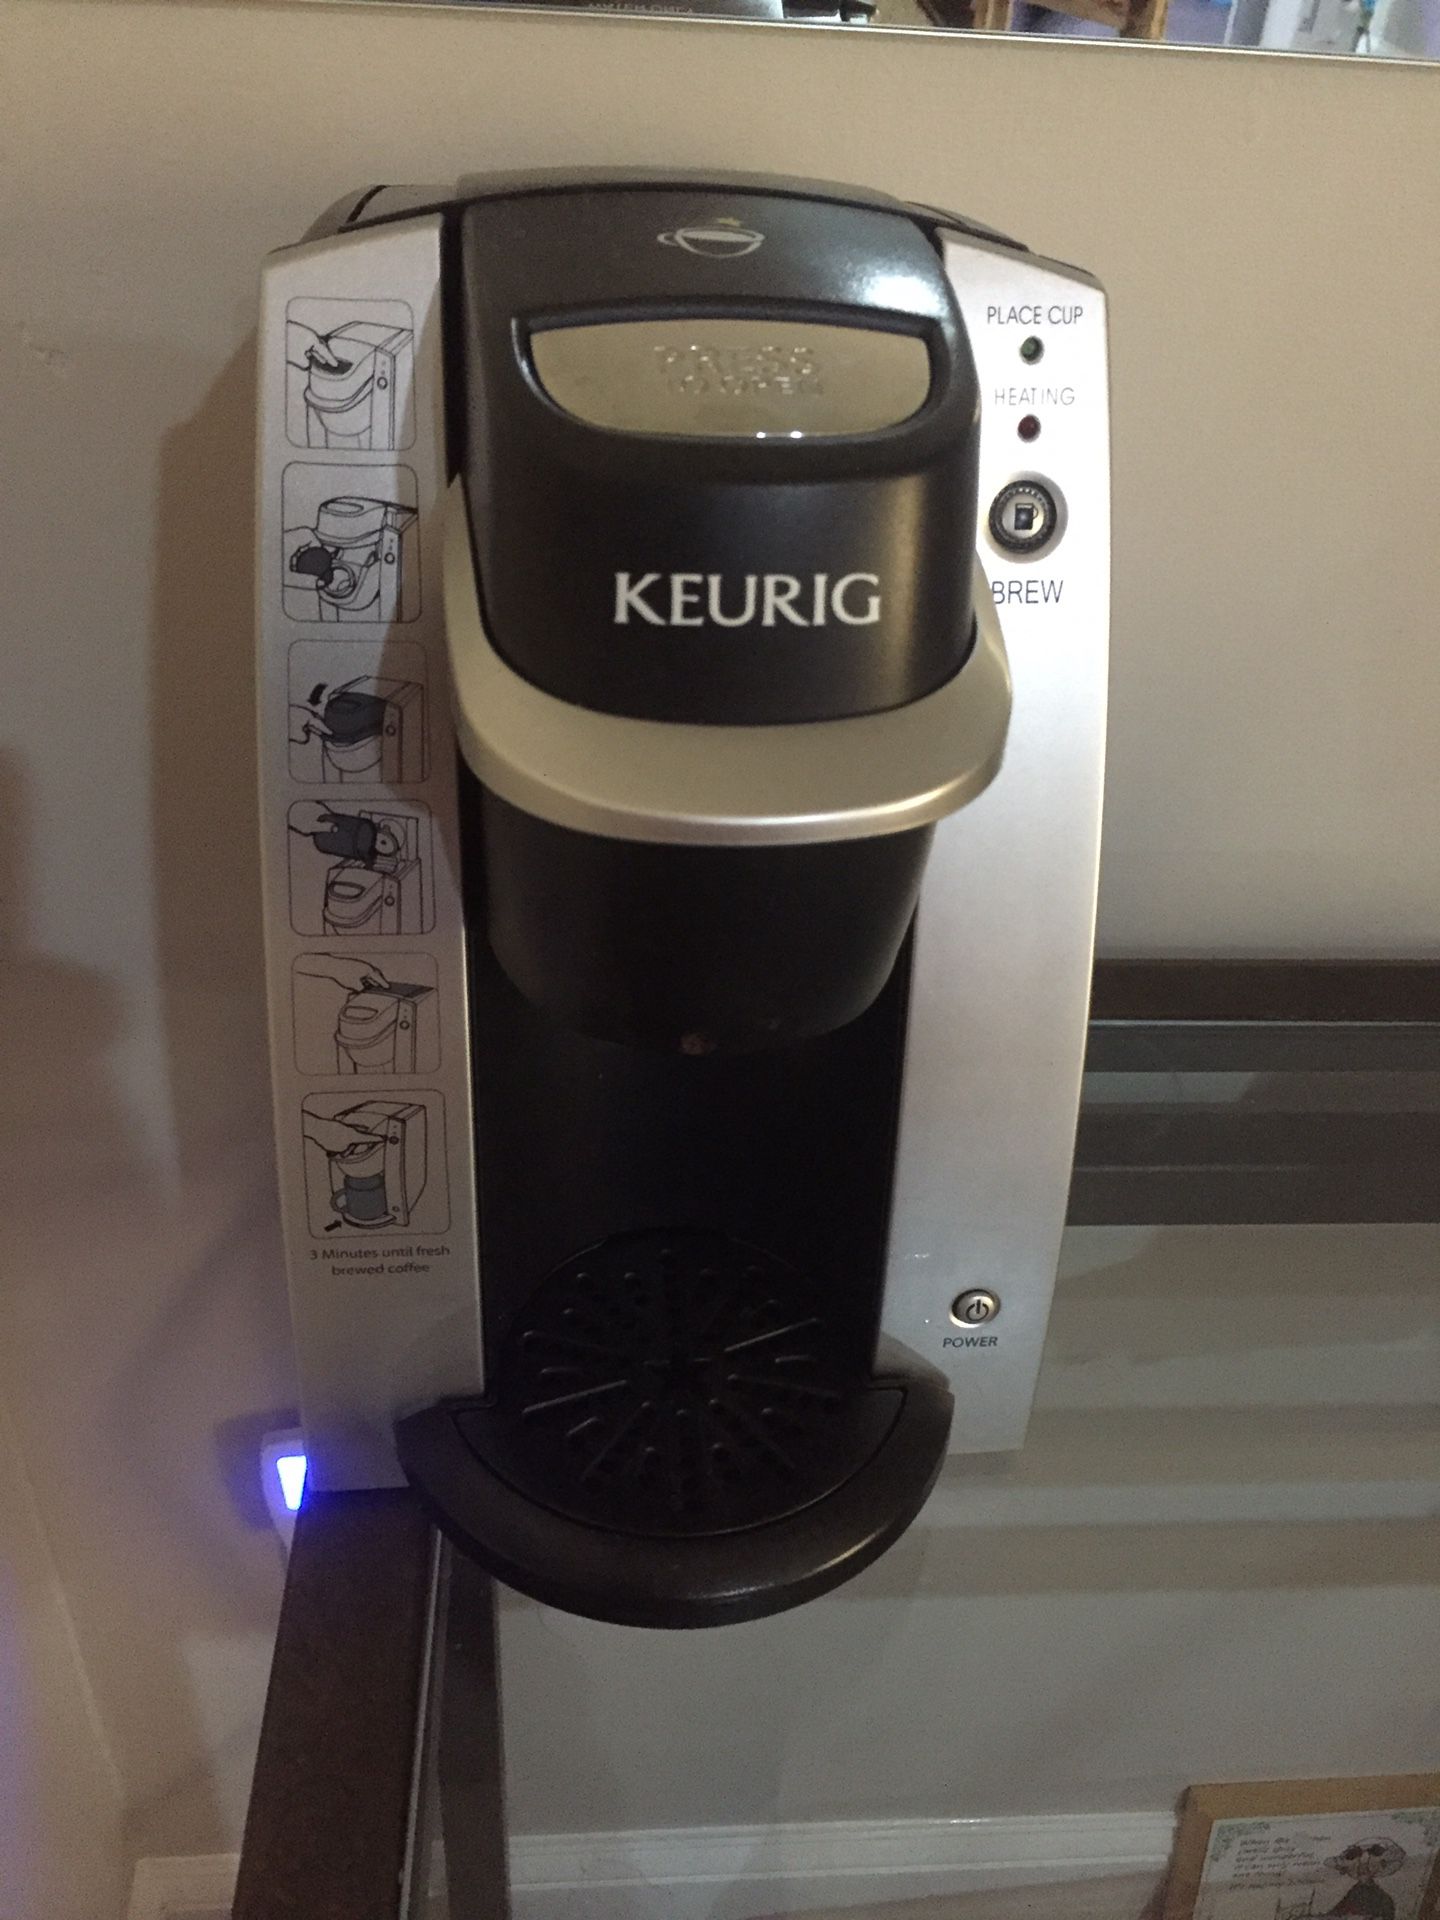 KEURIG coffee maker